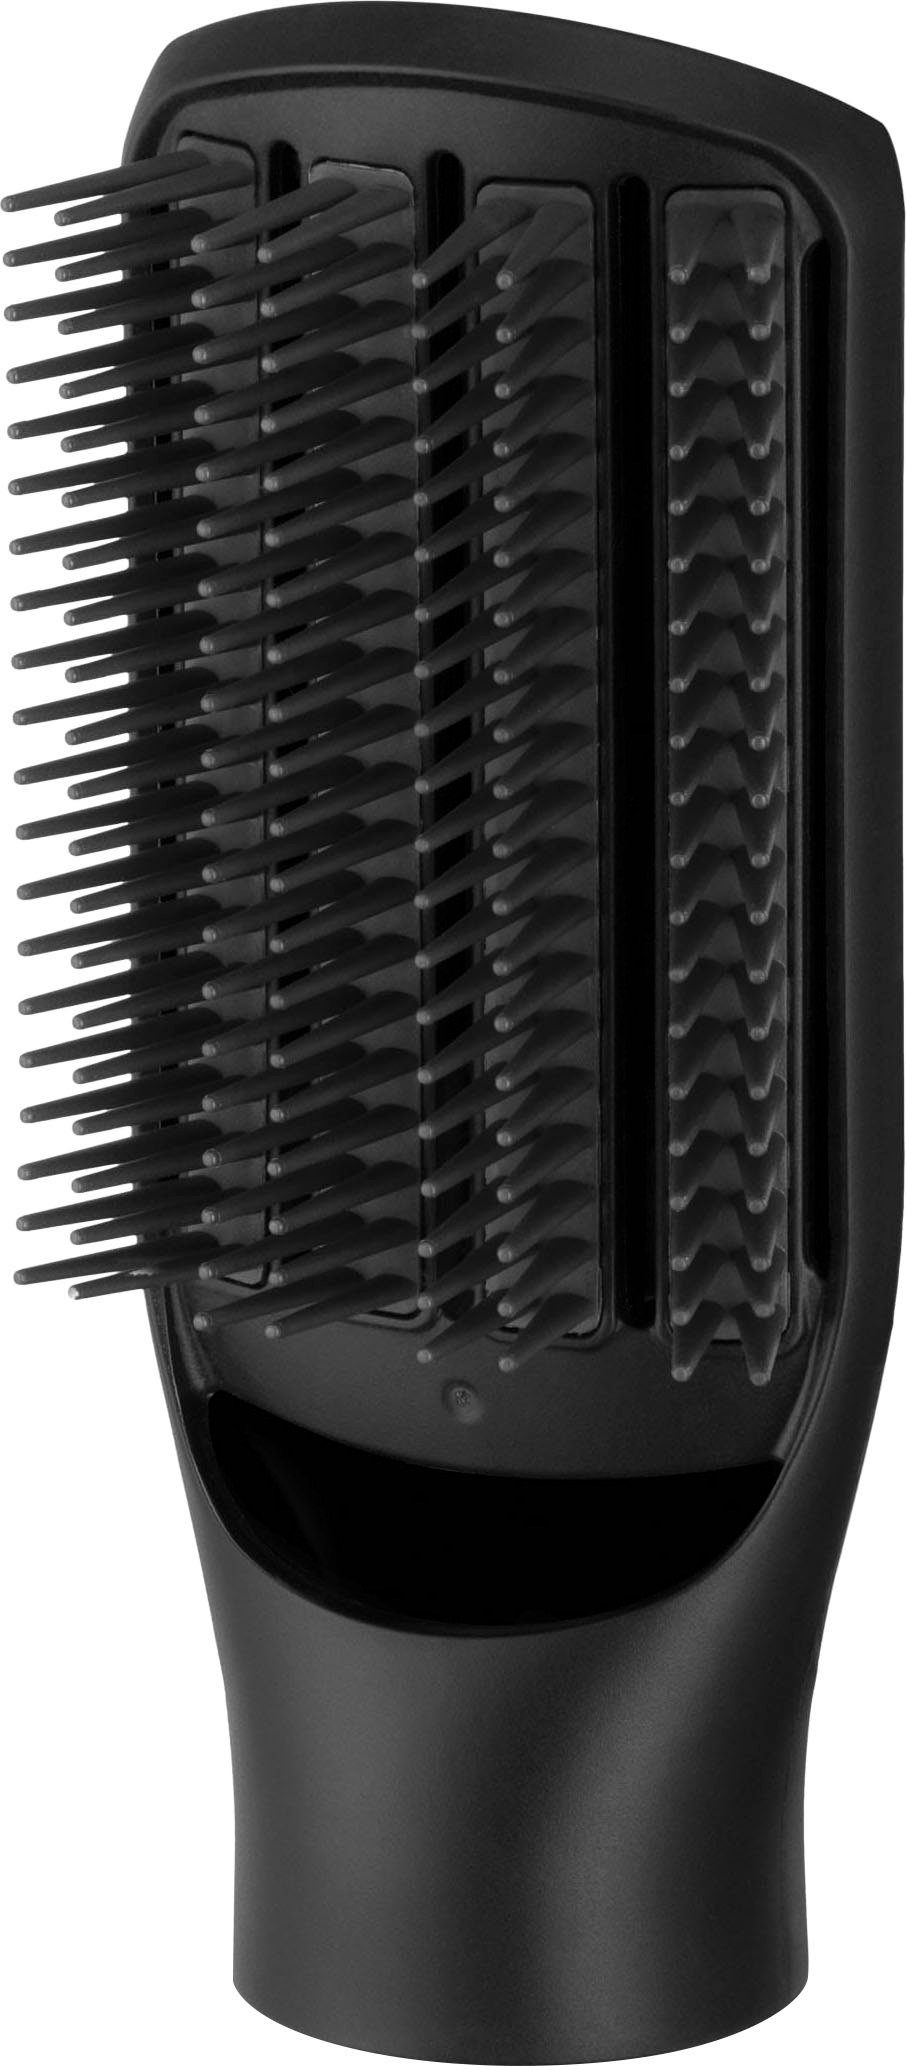 Remington Warmluftbürste Blow Dry & Haarlängen (rotierender Lockenbürste) Watt Style alle 1.000 Airstyler/Rund-& AS7580